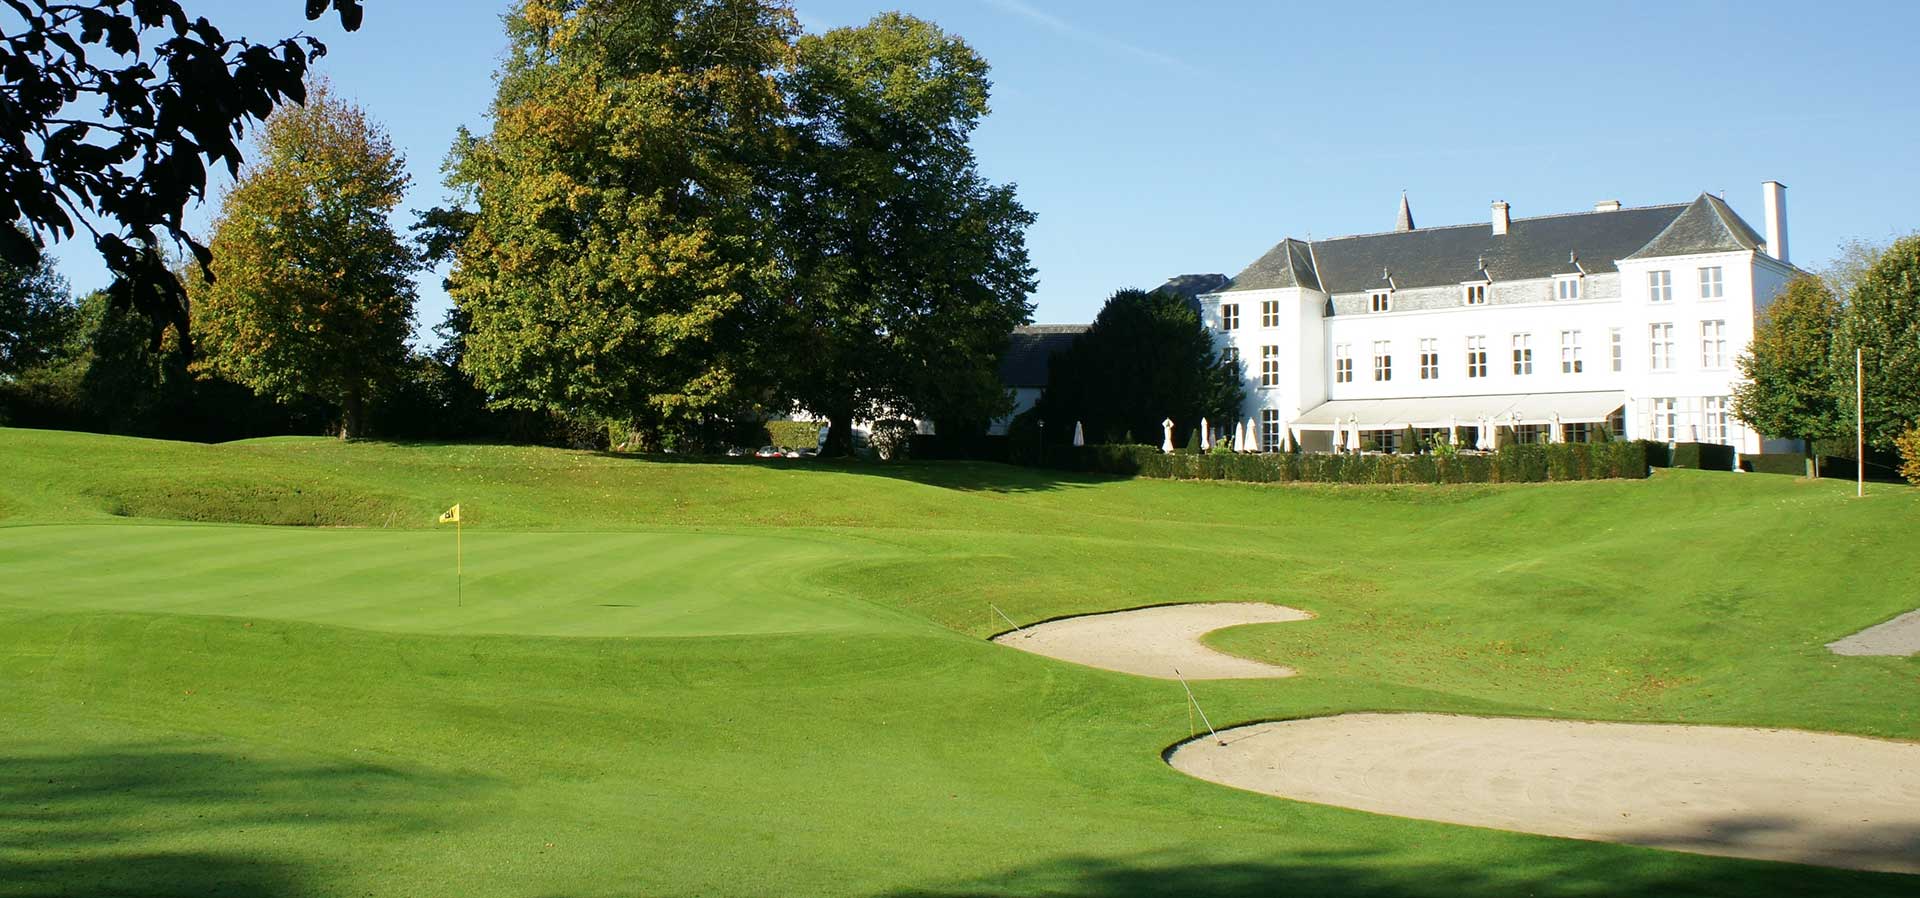 Golfexpedition-Golfreizen-België-Brussel-Klooster-Leuven-course-wit-gebouw-gras